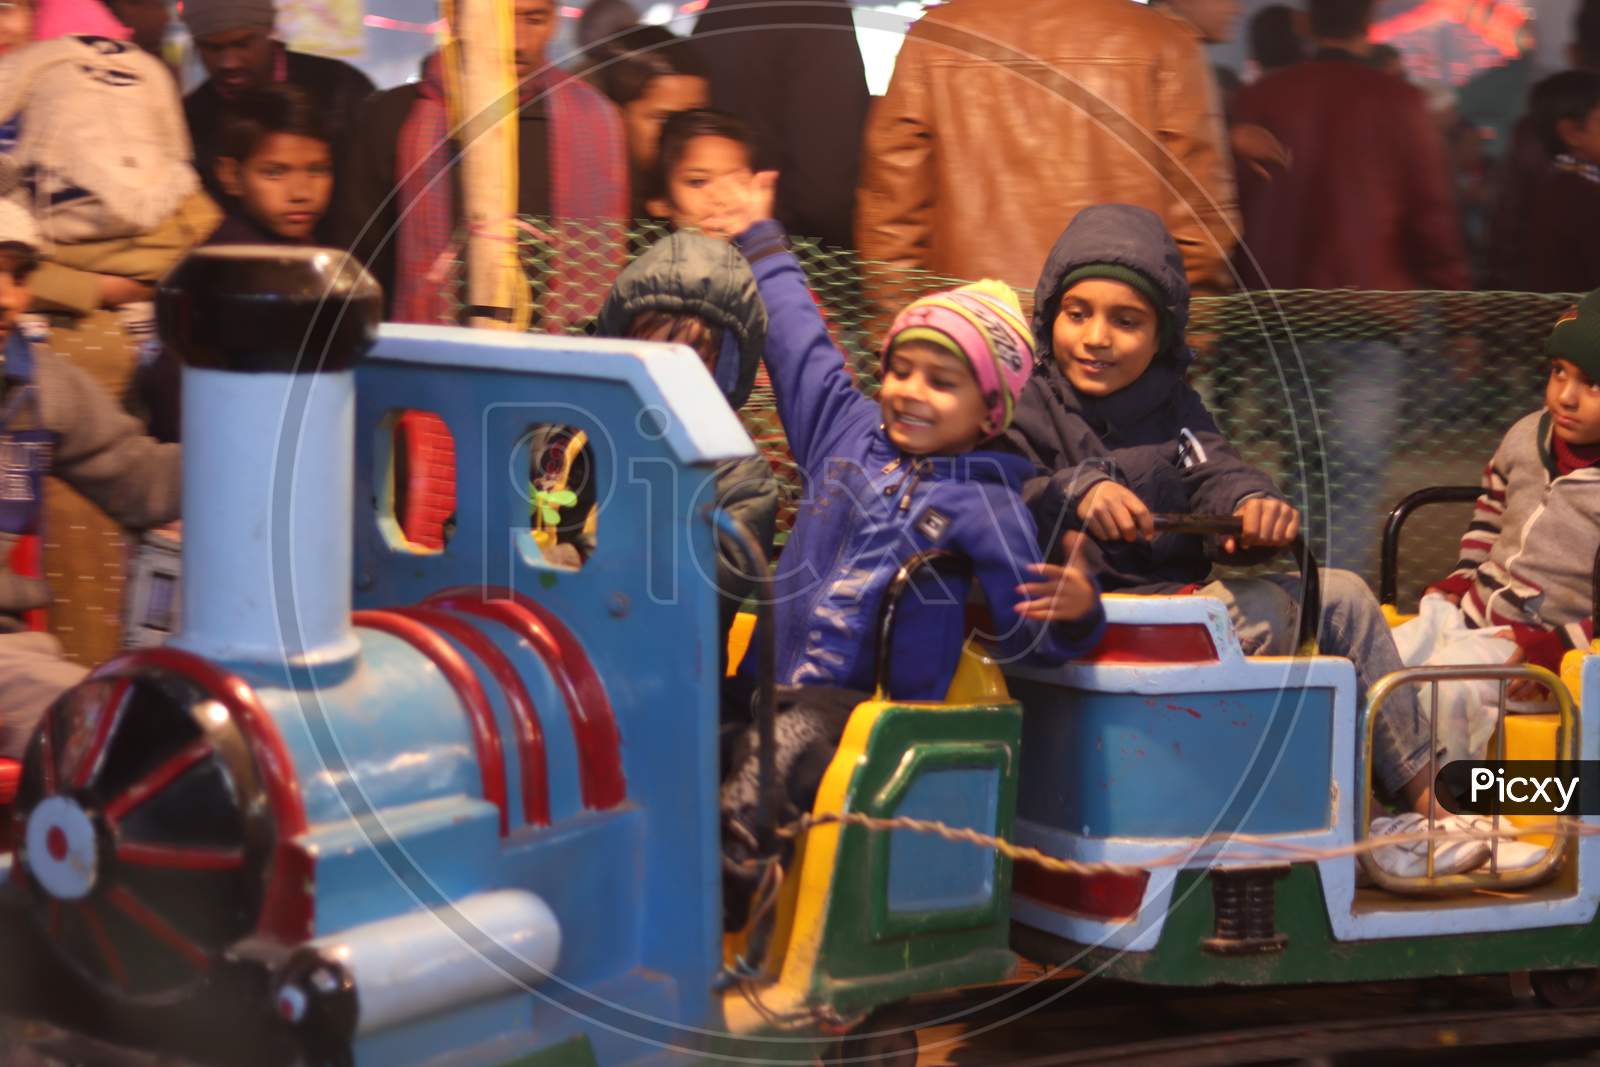 Children Enjoying Amusement Rides in an Fair